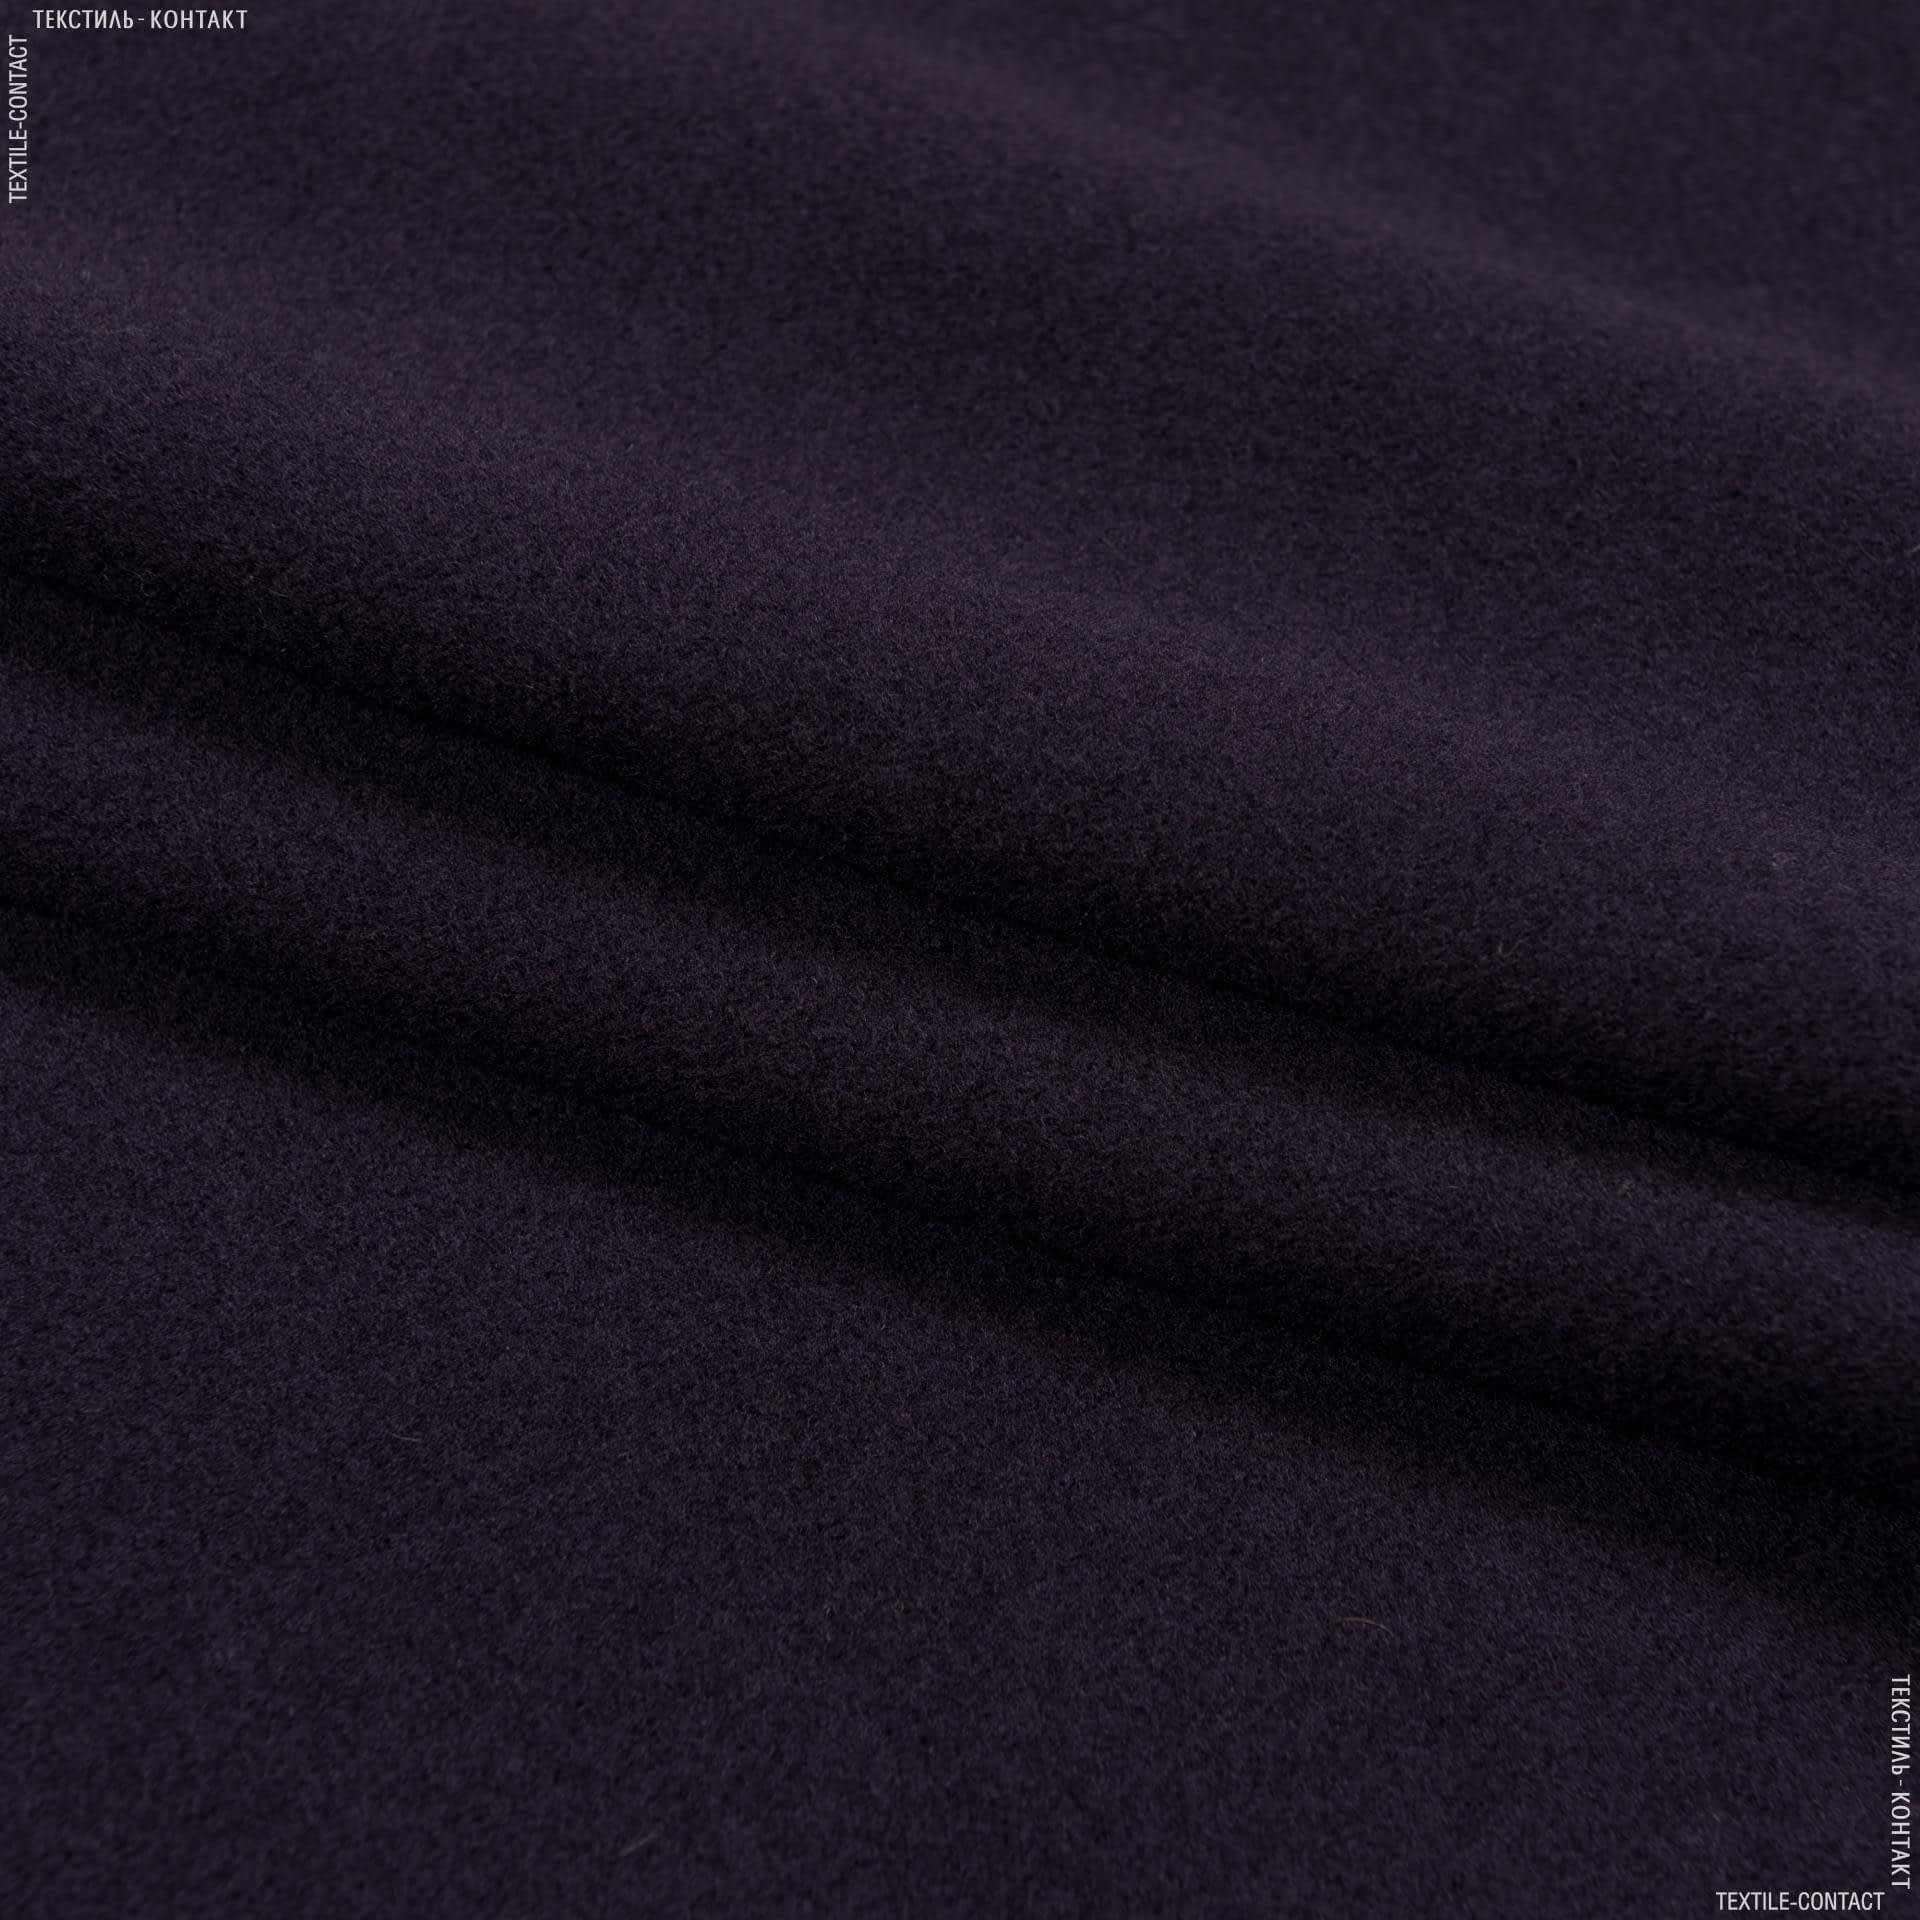 Ткани для верхней одежды - Пальтовый кашемир вирджиния чернильный